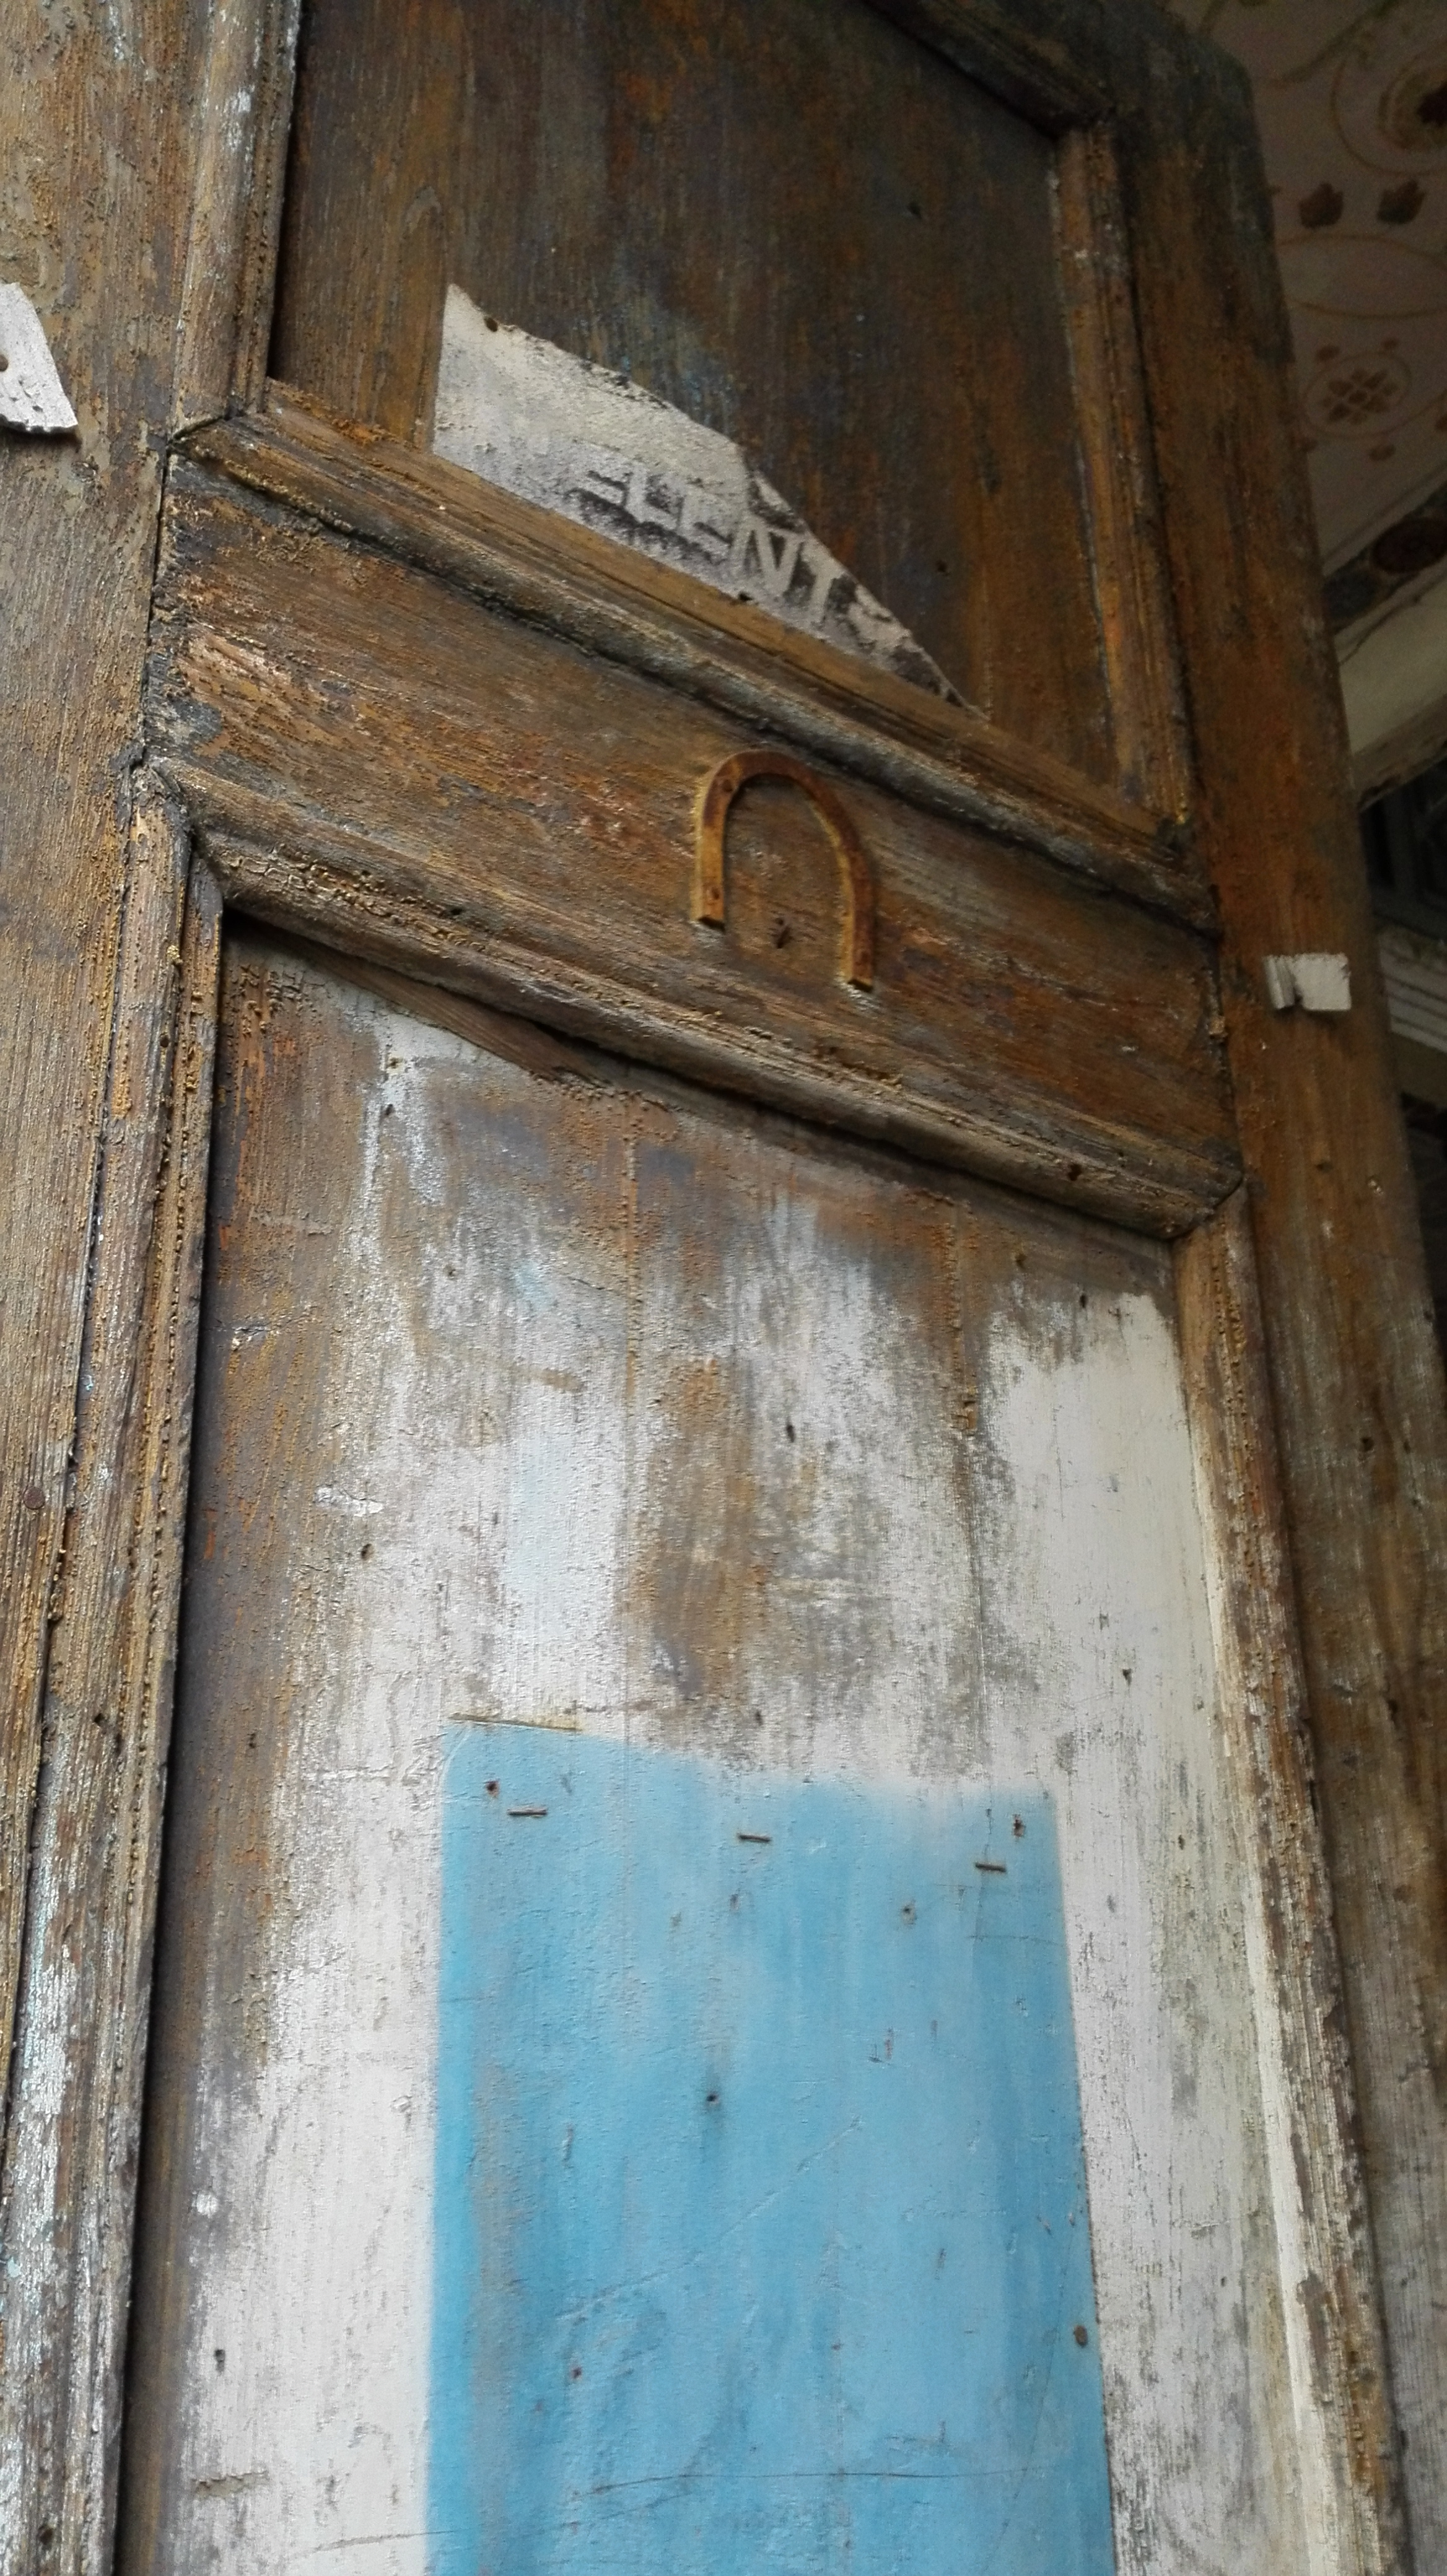 Beth Din ajtó amely a törvény házát jelöli